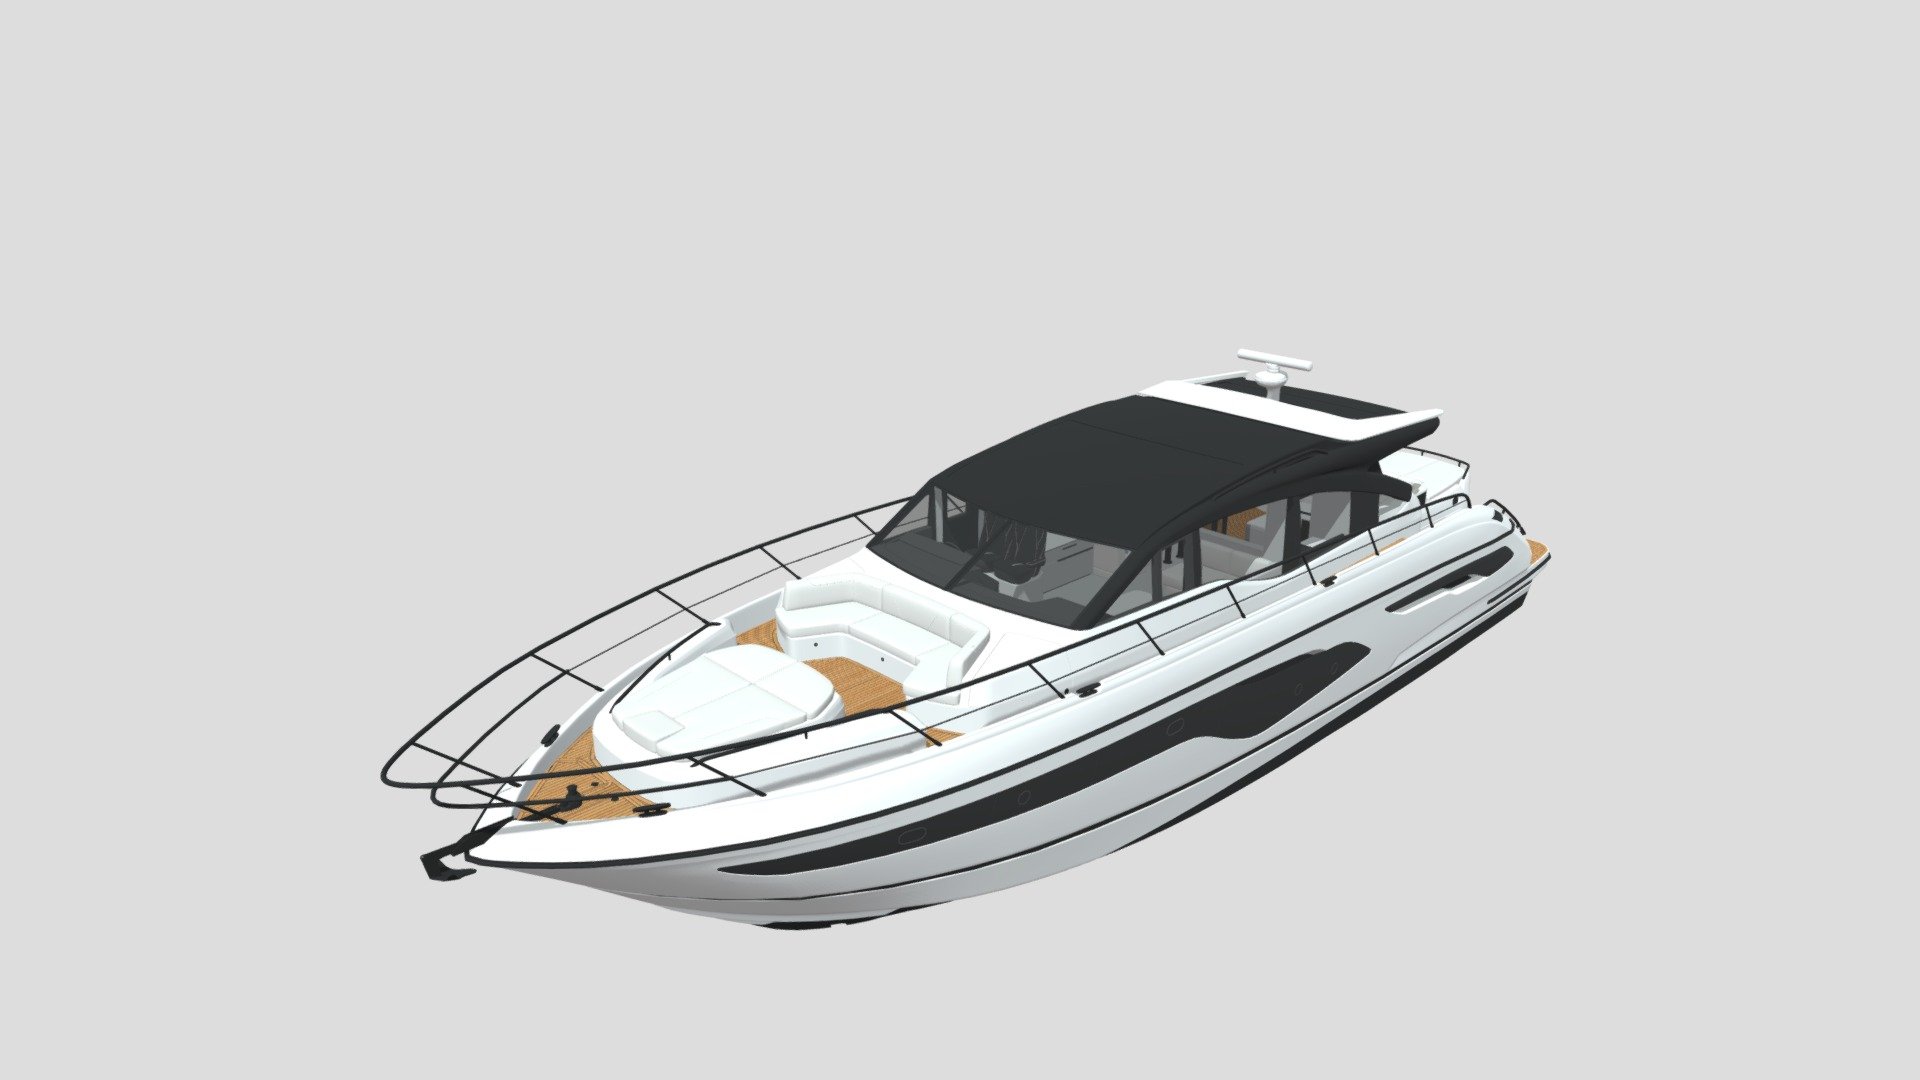 Princess_V65 motor yacht - Princess_V65 motor yacht - 3D model by 3dm-Store 3d model